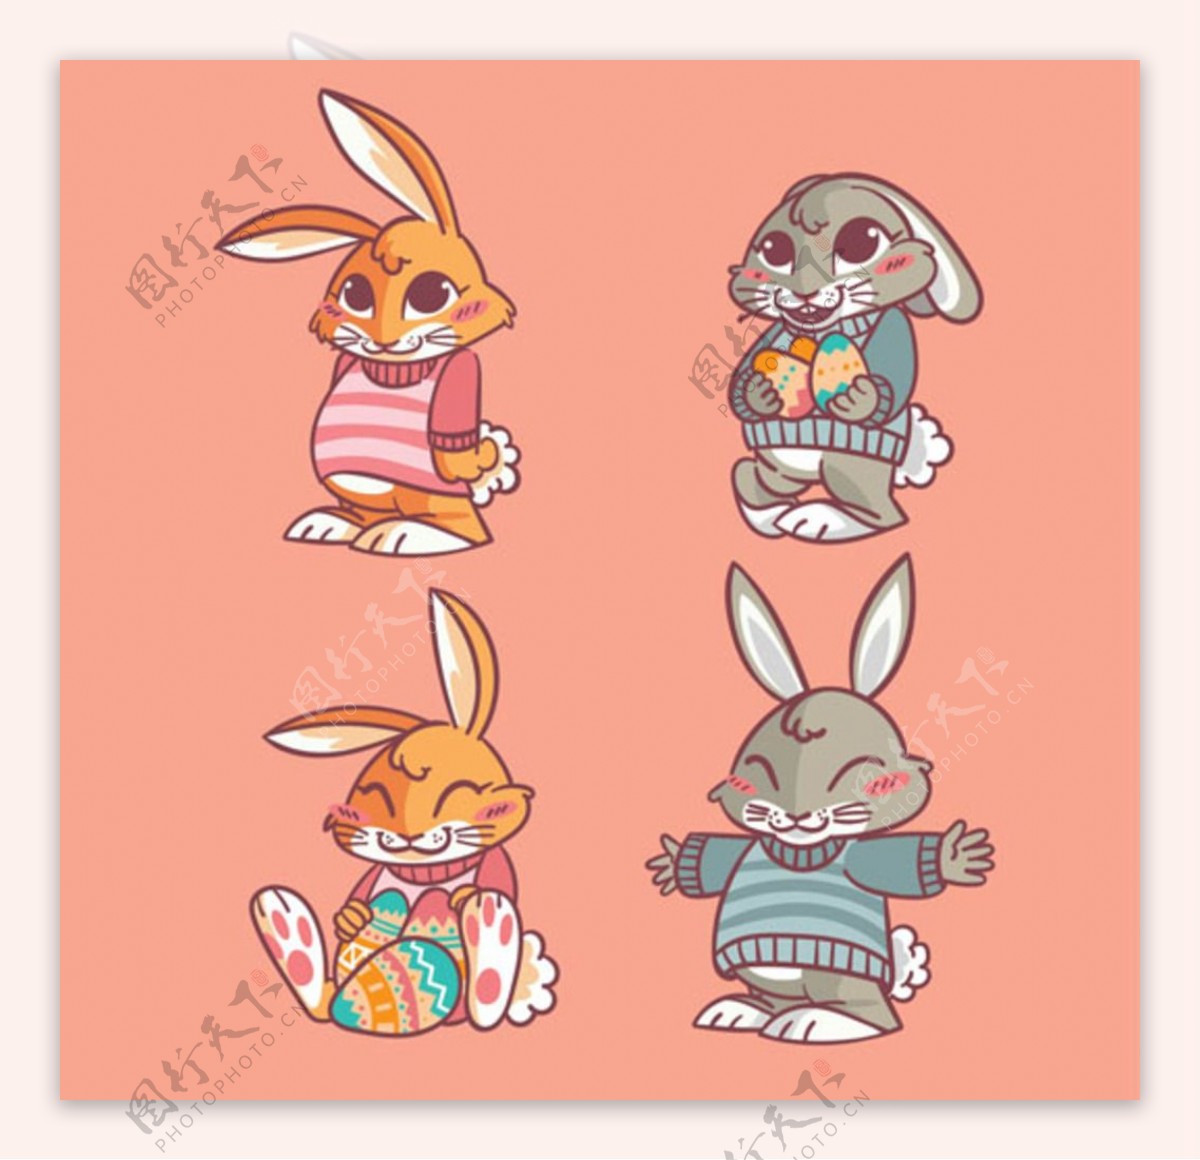 复活节快乐的卡通兔子